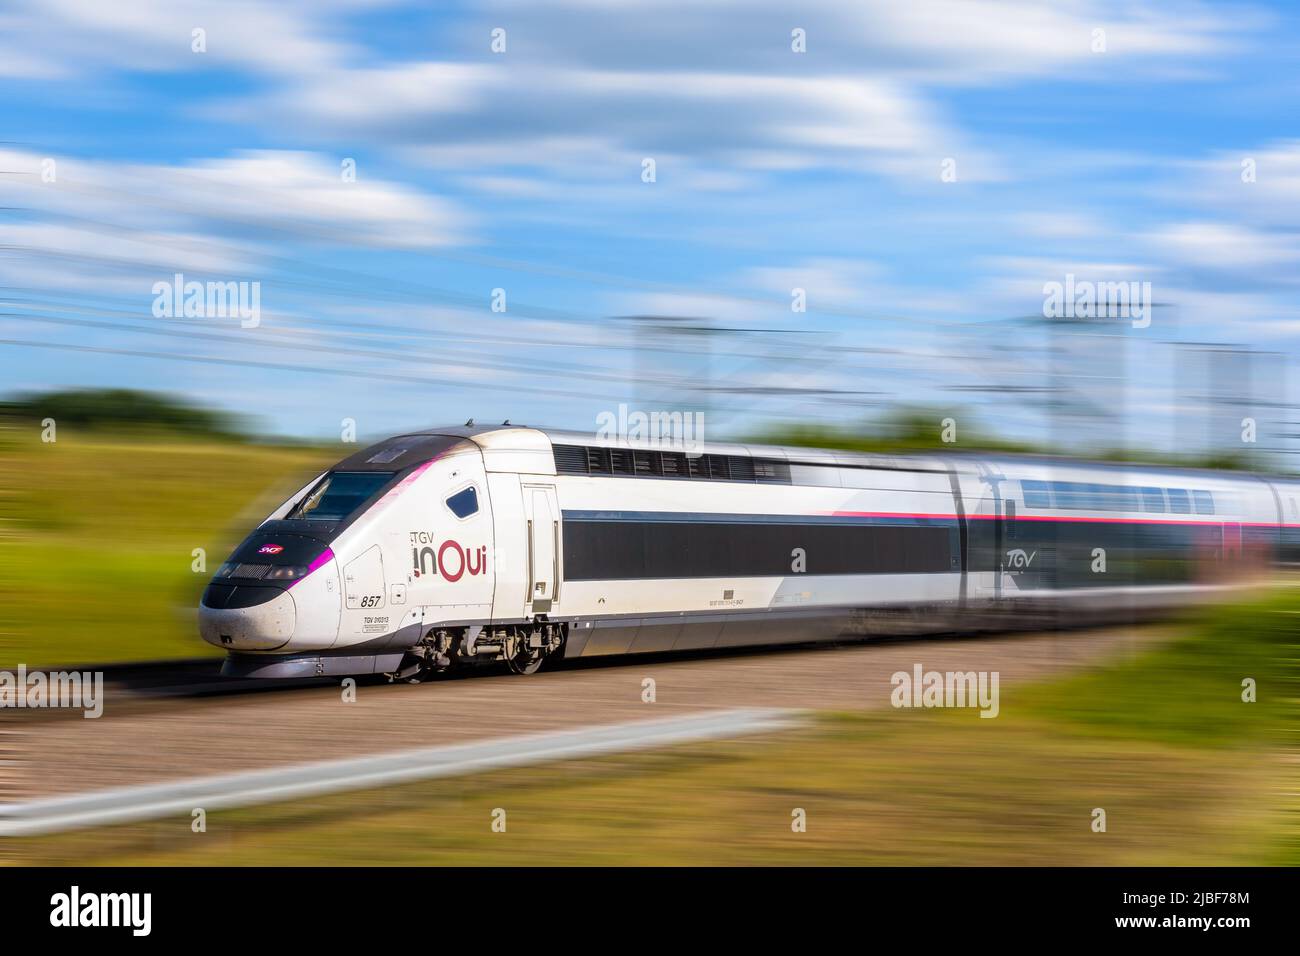 Un tren de alta velocidad TGV Euroduplex inOui de la compañía ferroviaria francesa SNCF está conduciendo a toda velocidad en el campo. Foto de stock